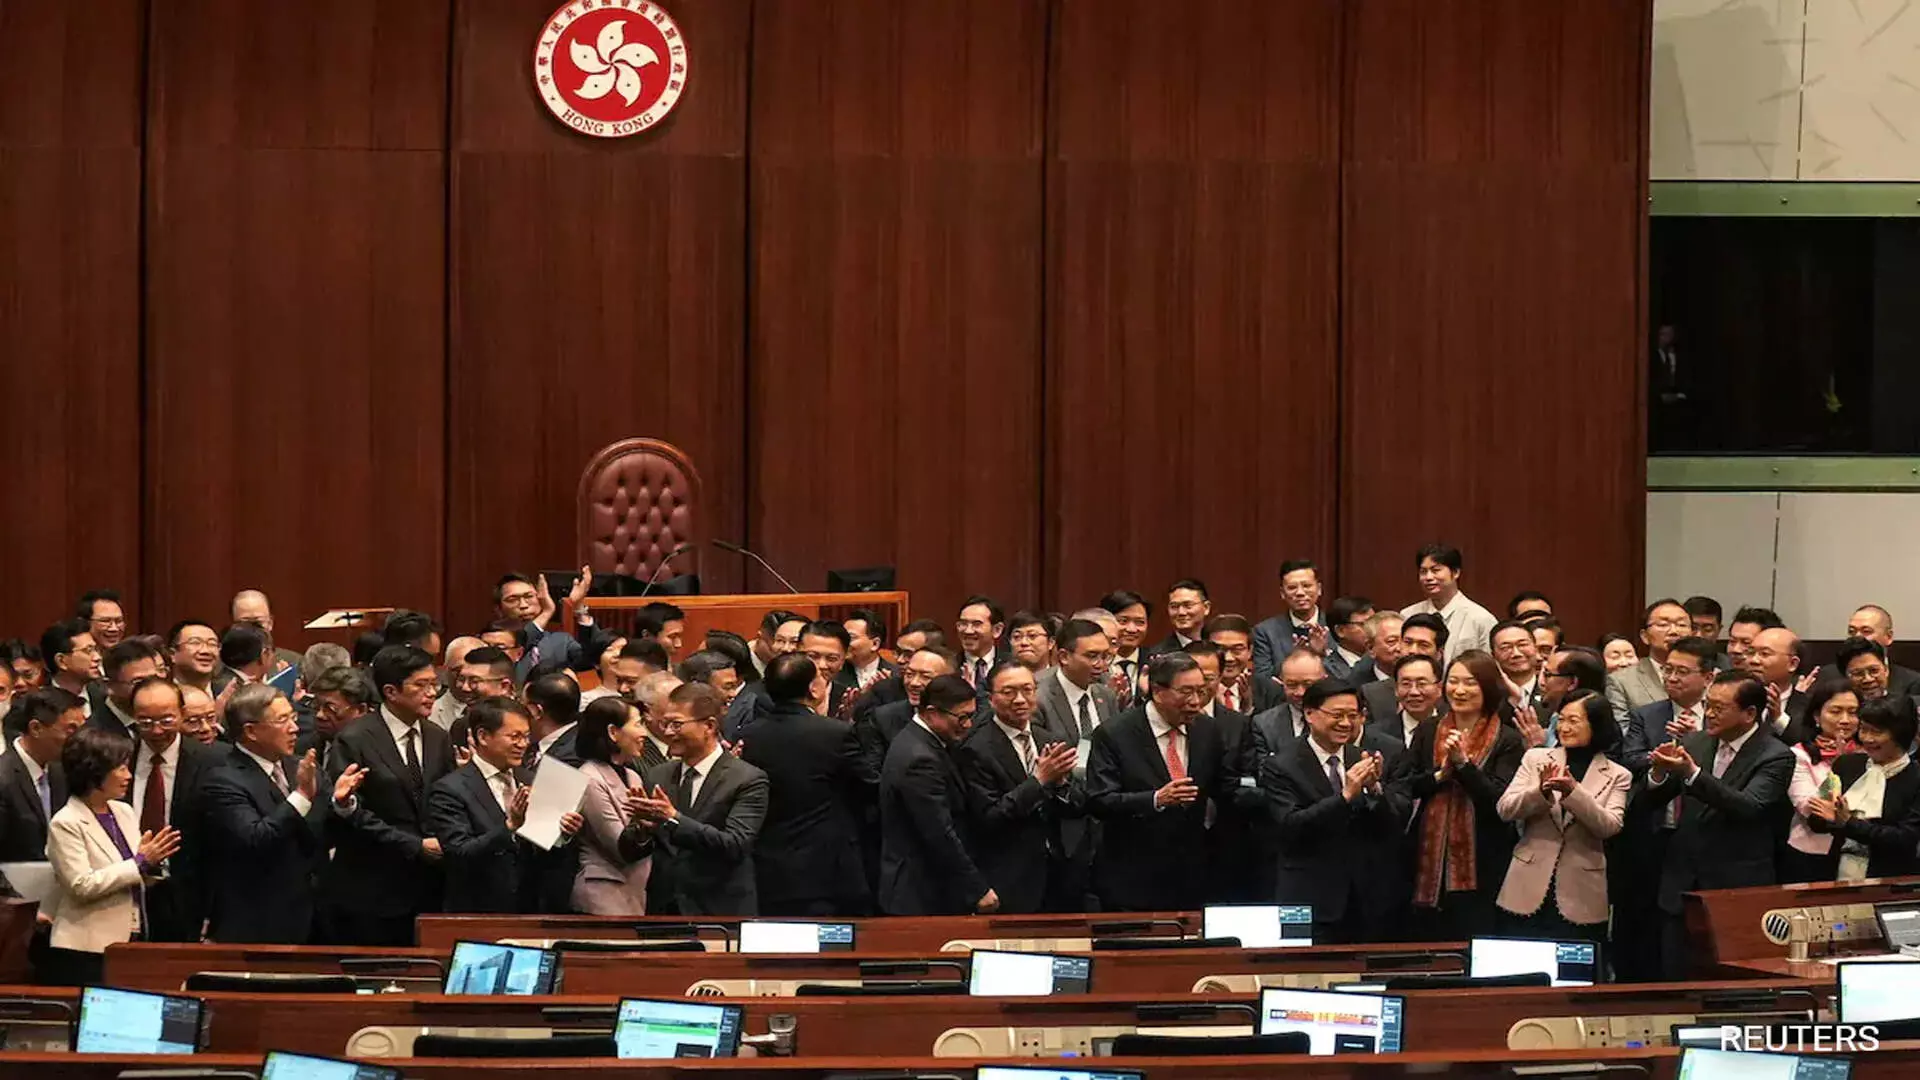 हांगकांग का नया राष्ट्रीय सुरक्षा कानून ,कैसे प्रभावित करेगा यह स्वतंत्रता को